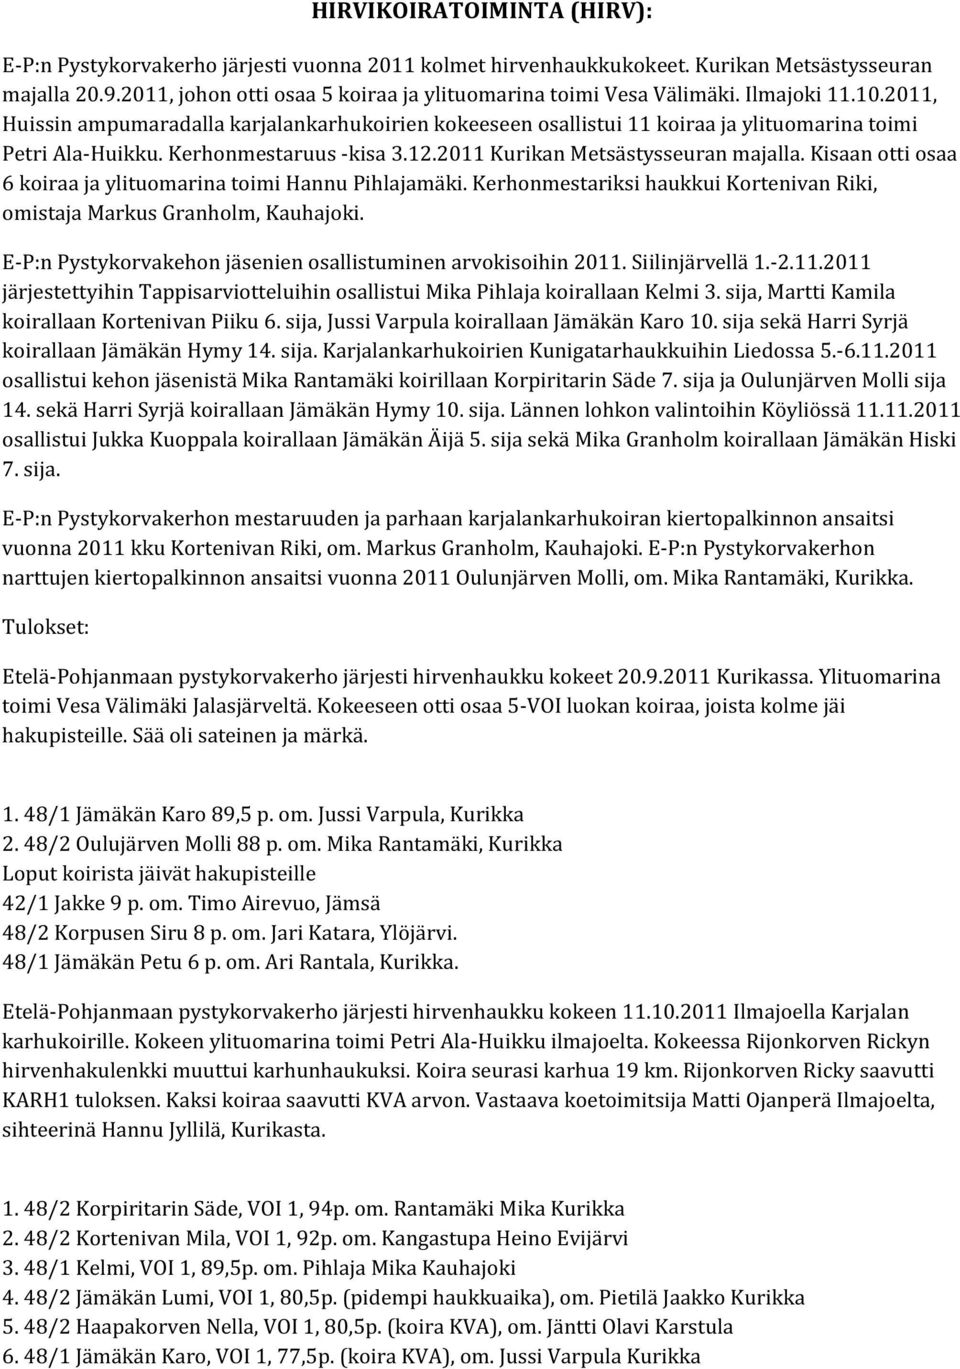 2011, Huissin ampumaradalla karjalankarhukoirien kokeeseen osallistui 11 koiraa ja ylituomarina toimi Petri Ala-Huikku. Kerhonmestaruus -kisa 3.12.2011 Kurikan Metsästysseuran majalla.